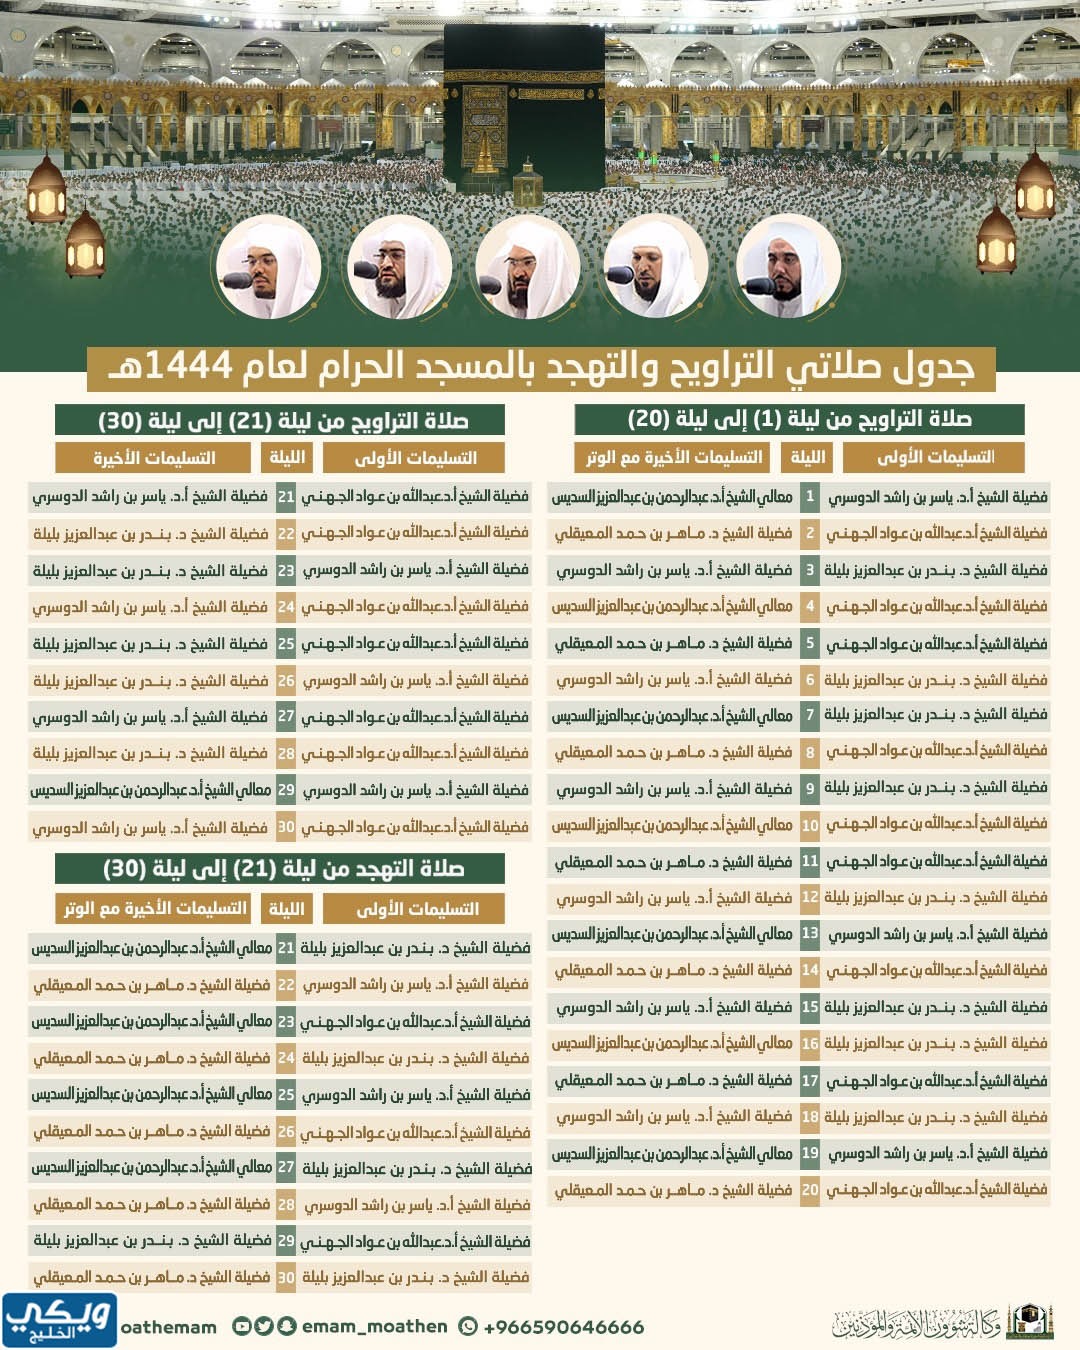 جدول صلاتي التراويح والتهجد في المسجد الحرام 1444